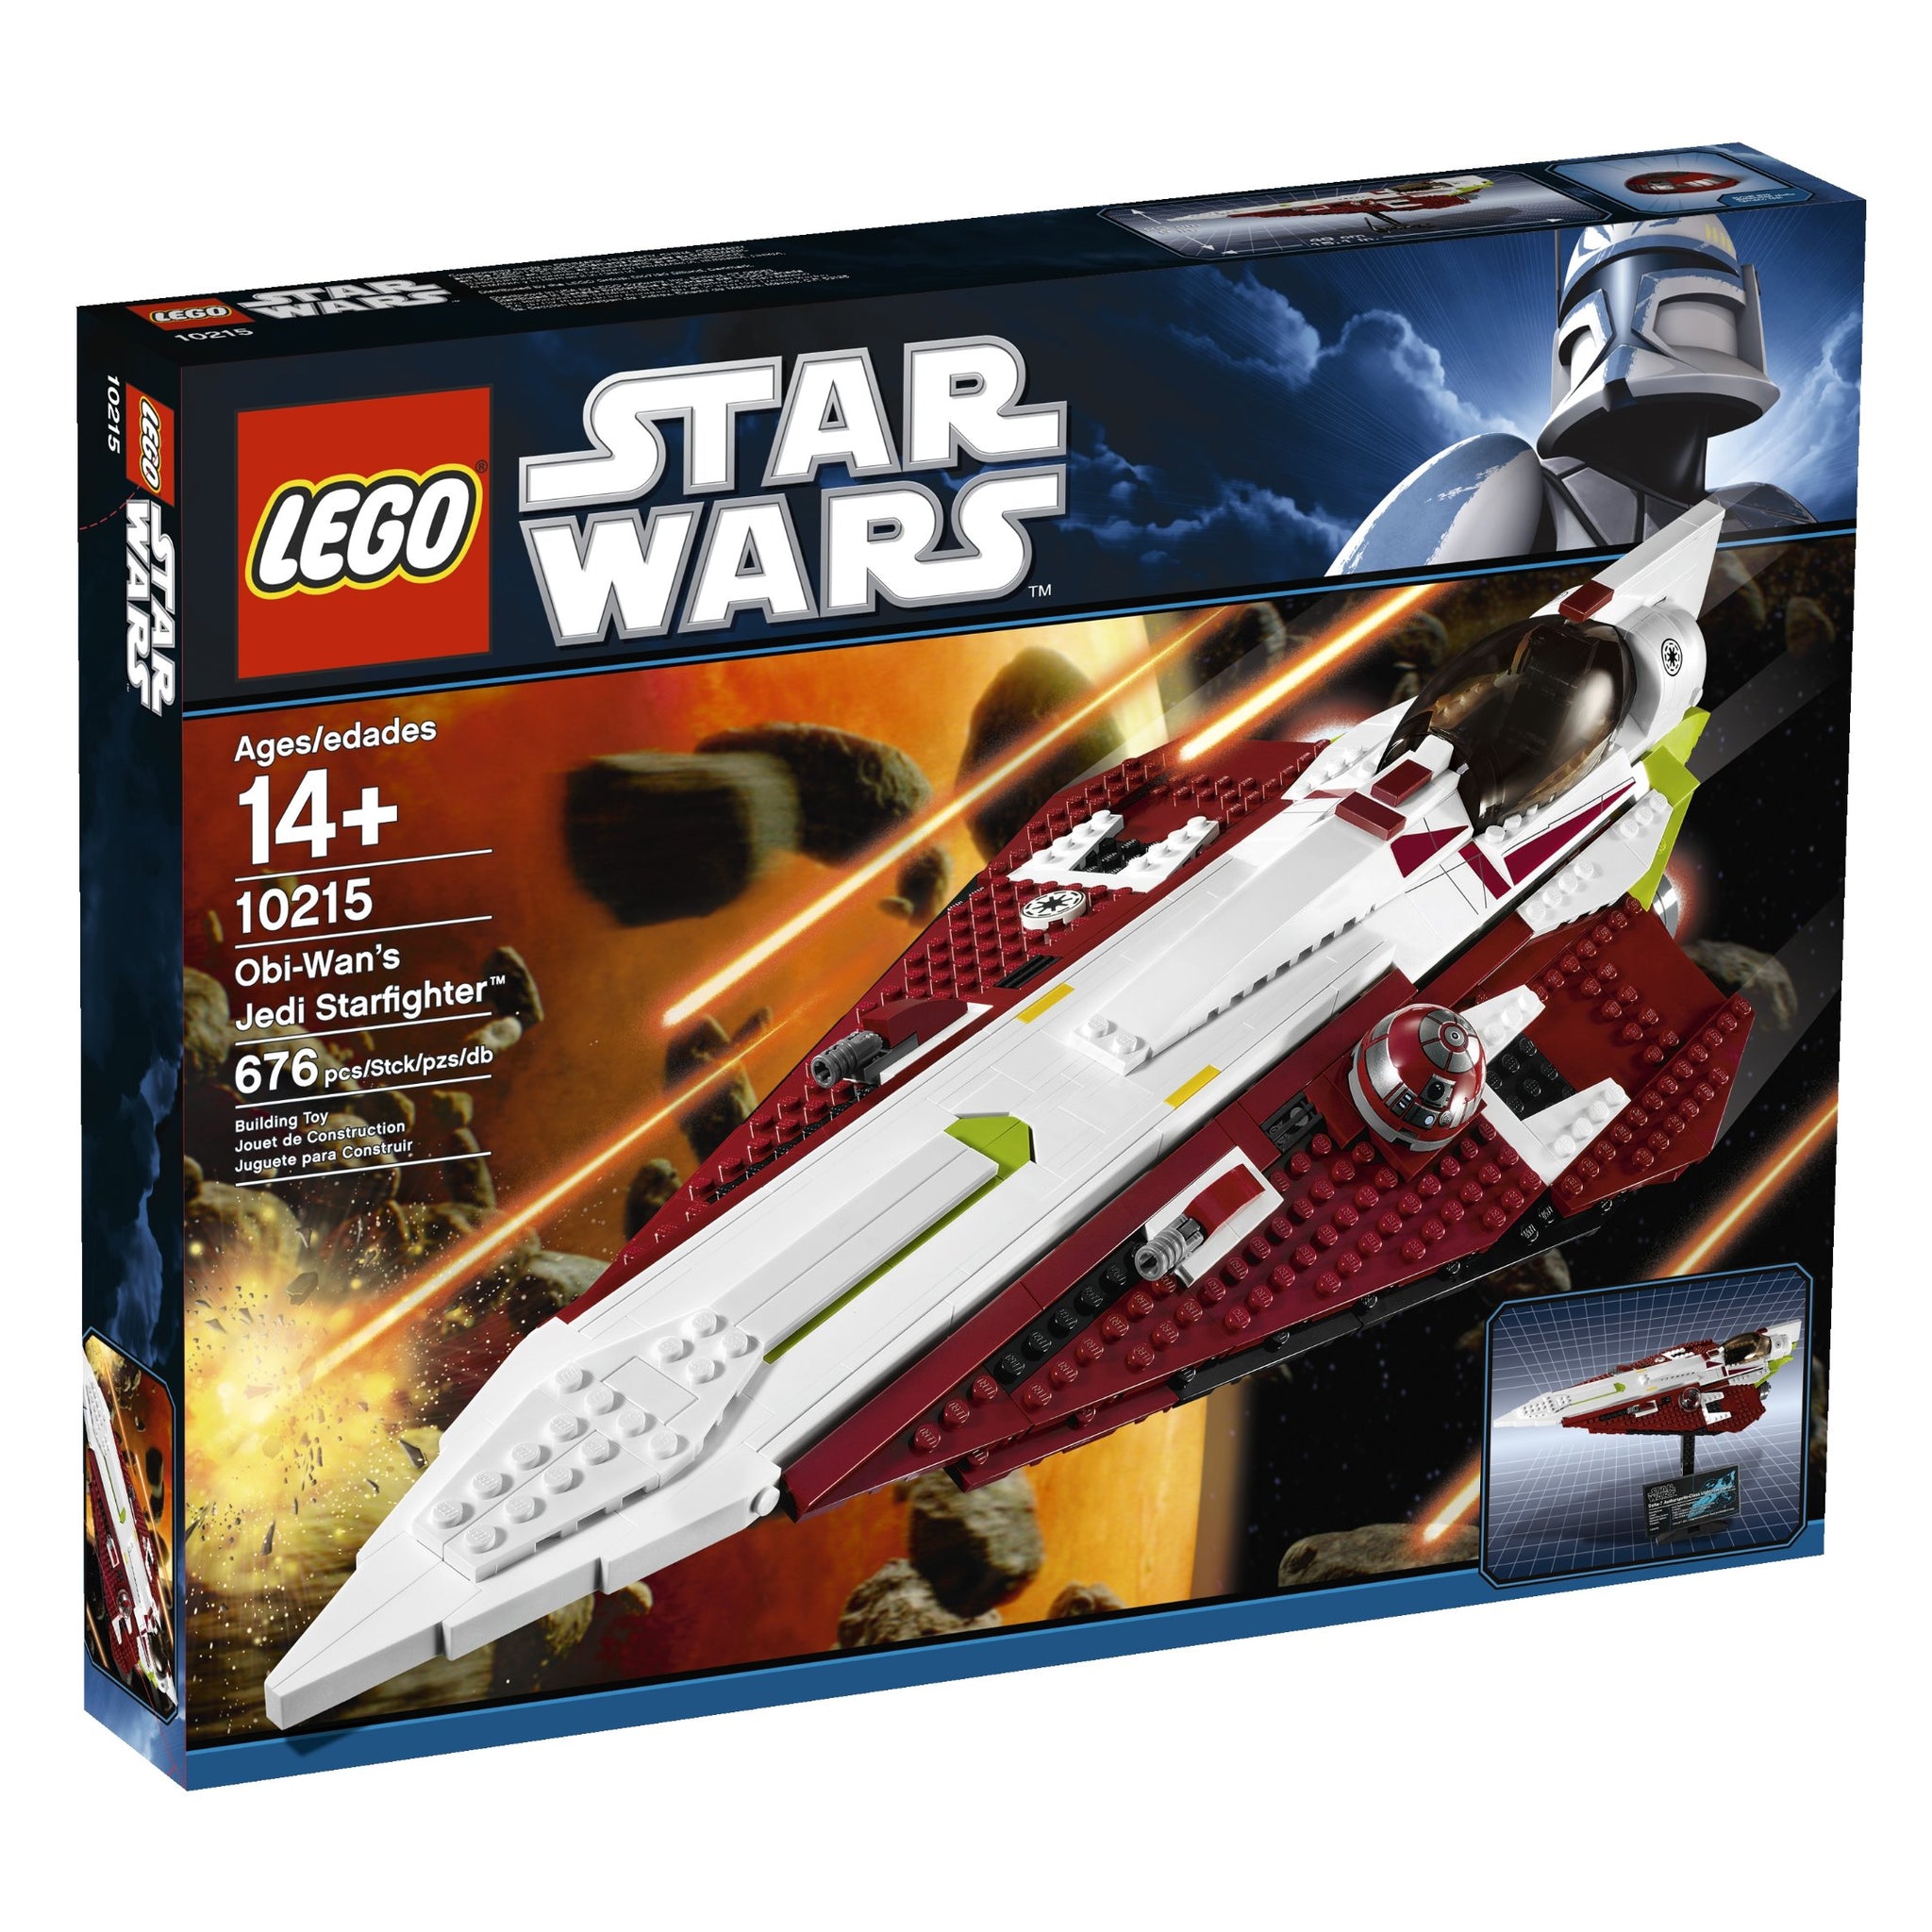 LEGO Star Wars Obi-Wan's Jedi Starfighter 10215